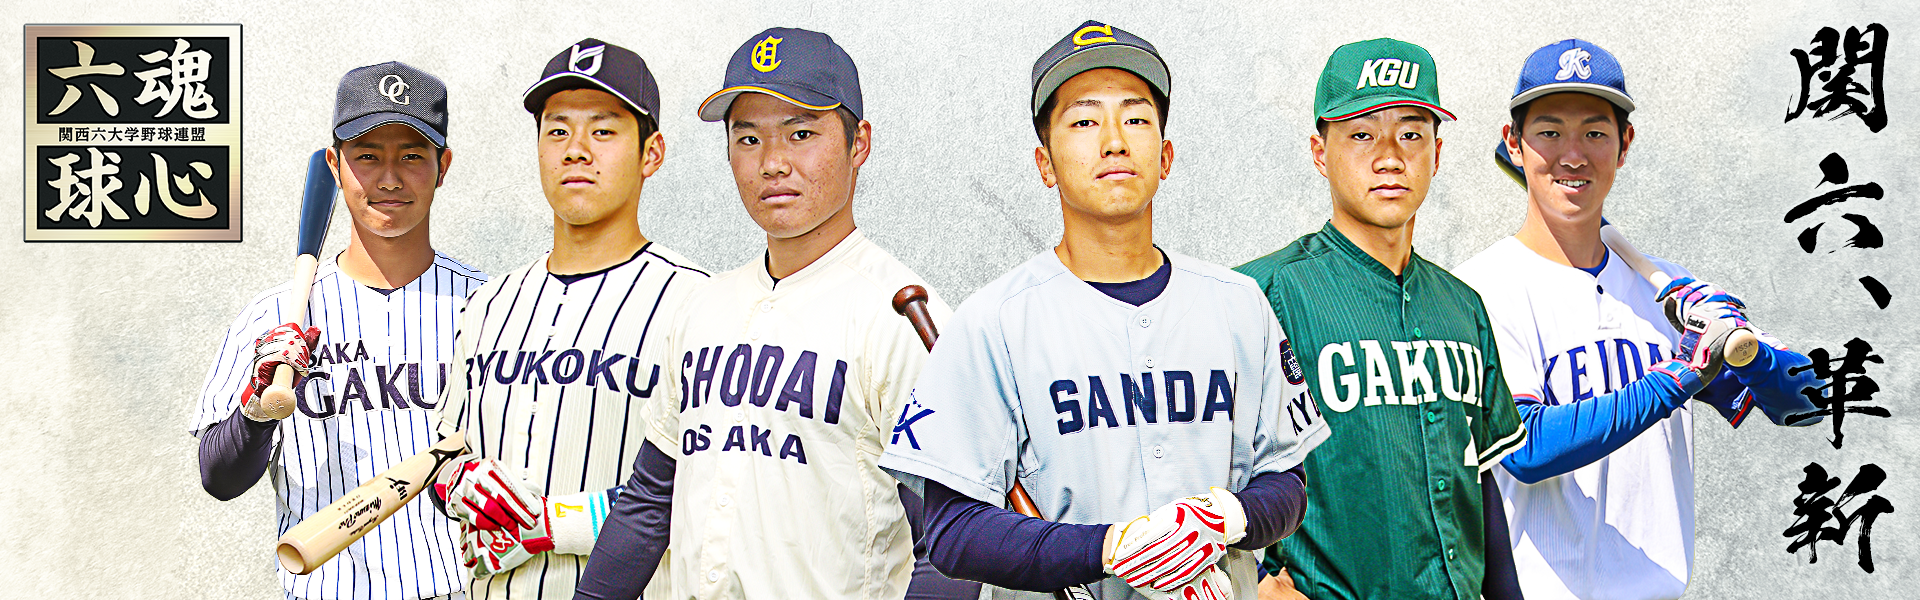 関西六大学野球連盟メインイメージ